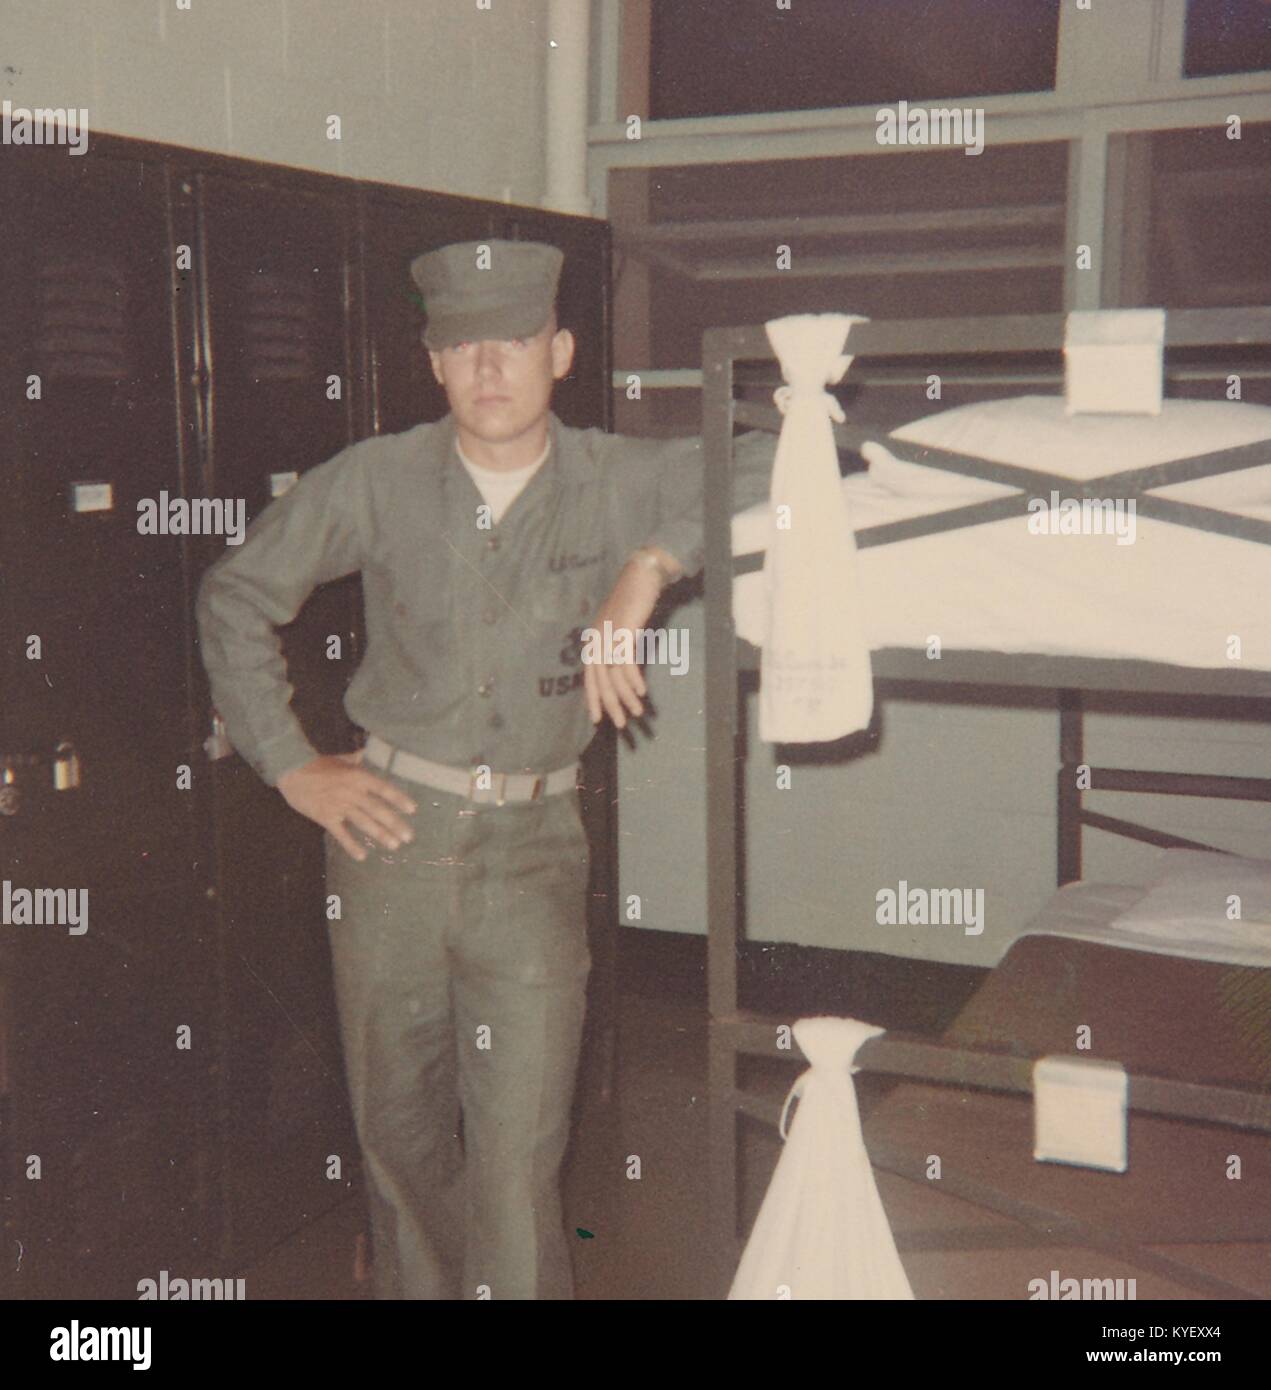 Amerikanischer Soldat in Uniform steht mit seinem Arm ruht auf dem Rand eines Etagenbett in einer Kaserne in Vietnam während des Vietnam Krieges, 1968. () Stockfoto